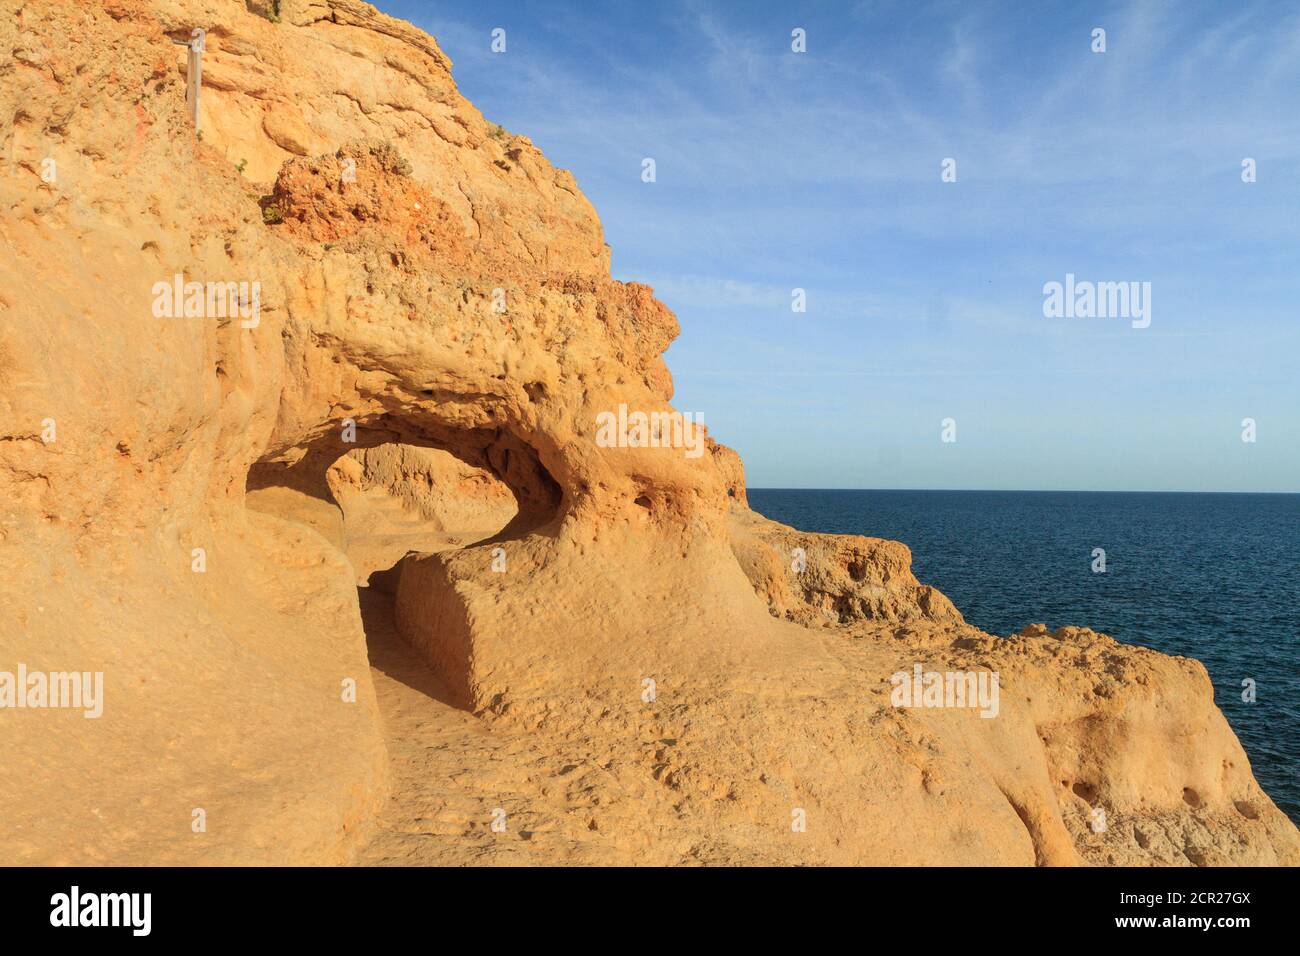 Rock formation at Algar Seco, Carvoeiro, Algarve, Portugal. Stock Photo